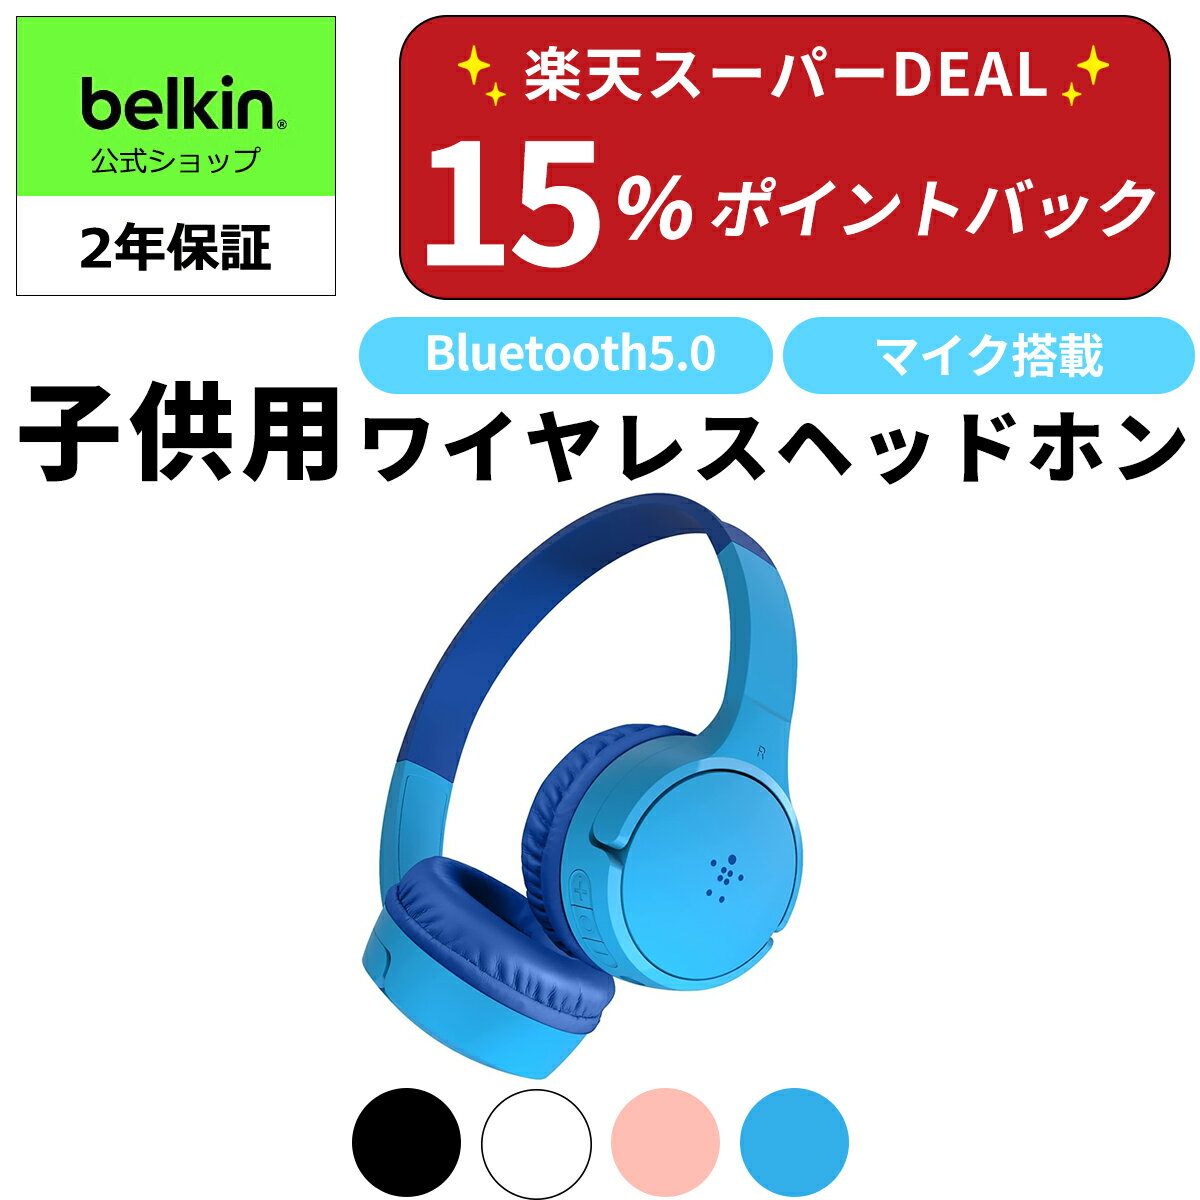 【あす楽・送料無料】Belkin 子供用 キッズ ワイヤレス